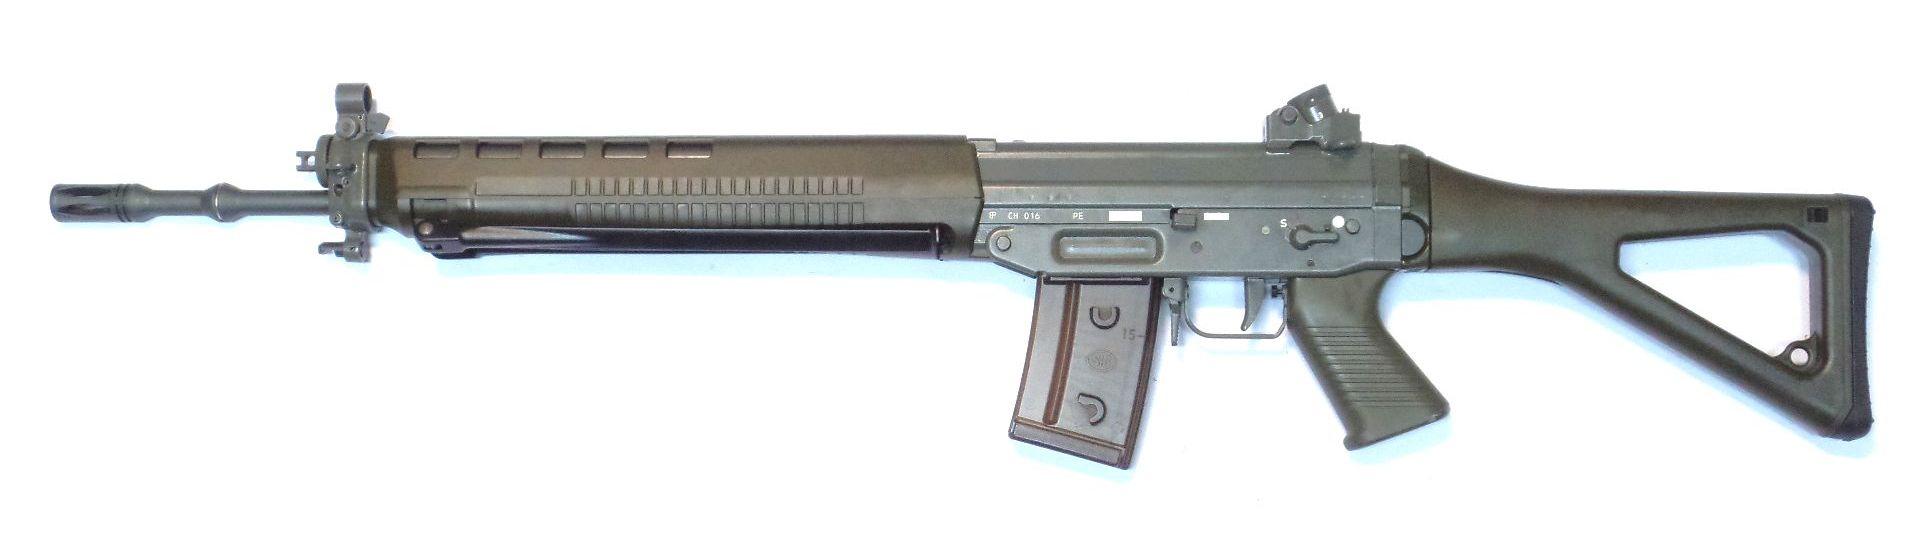 SIG 550 / PE90 calibre 5.56x45